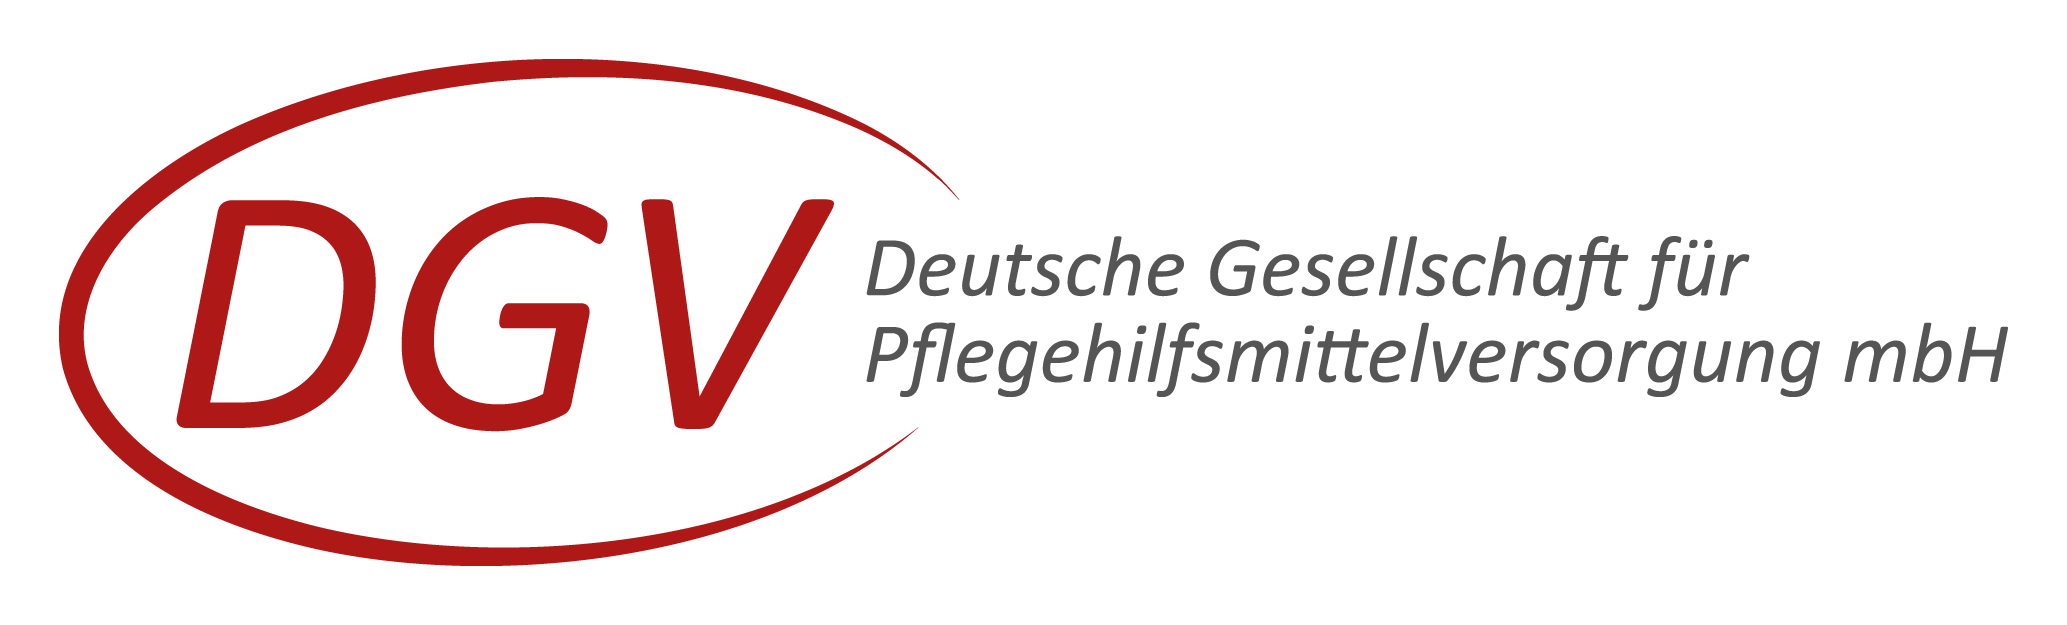 Deutsche Gesellschaft für Pflegehilfsmittel